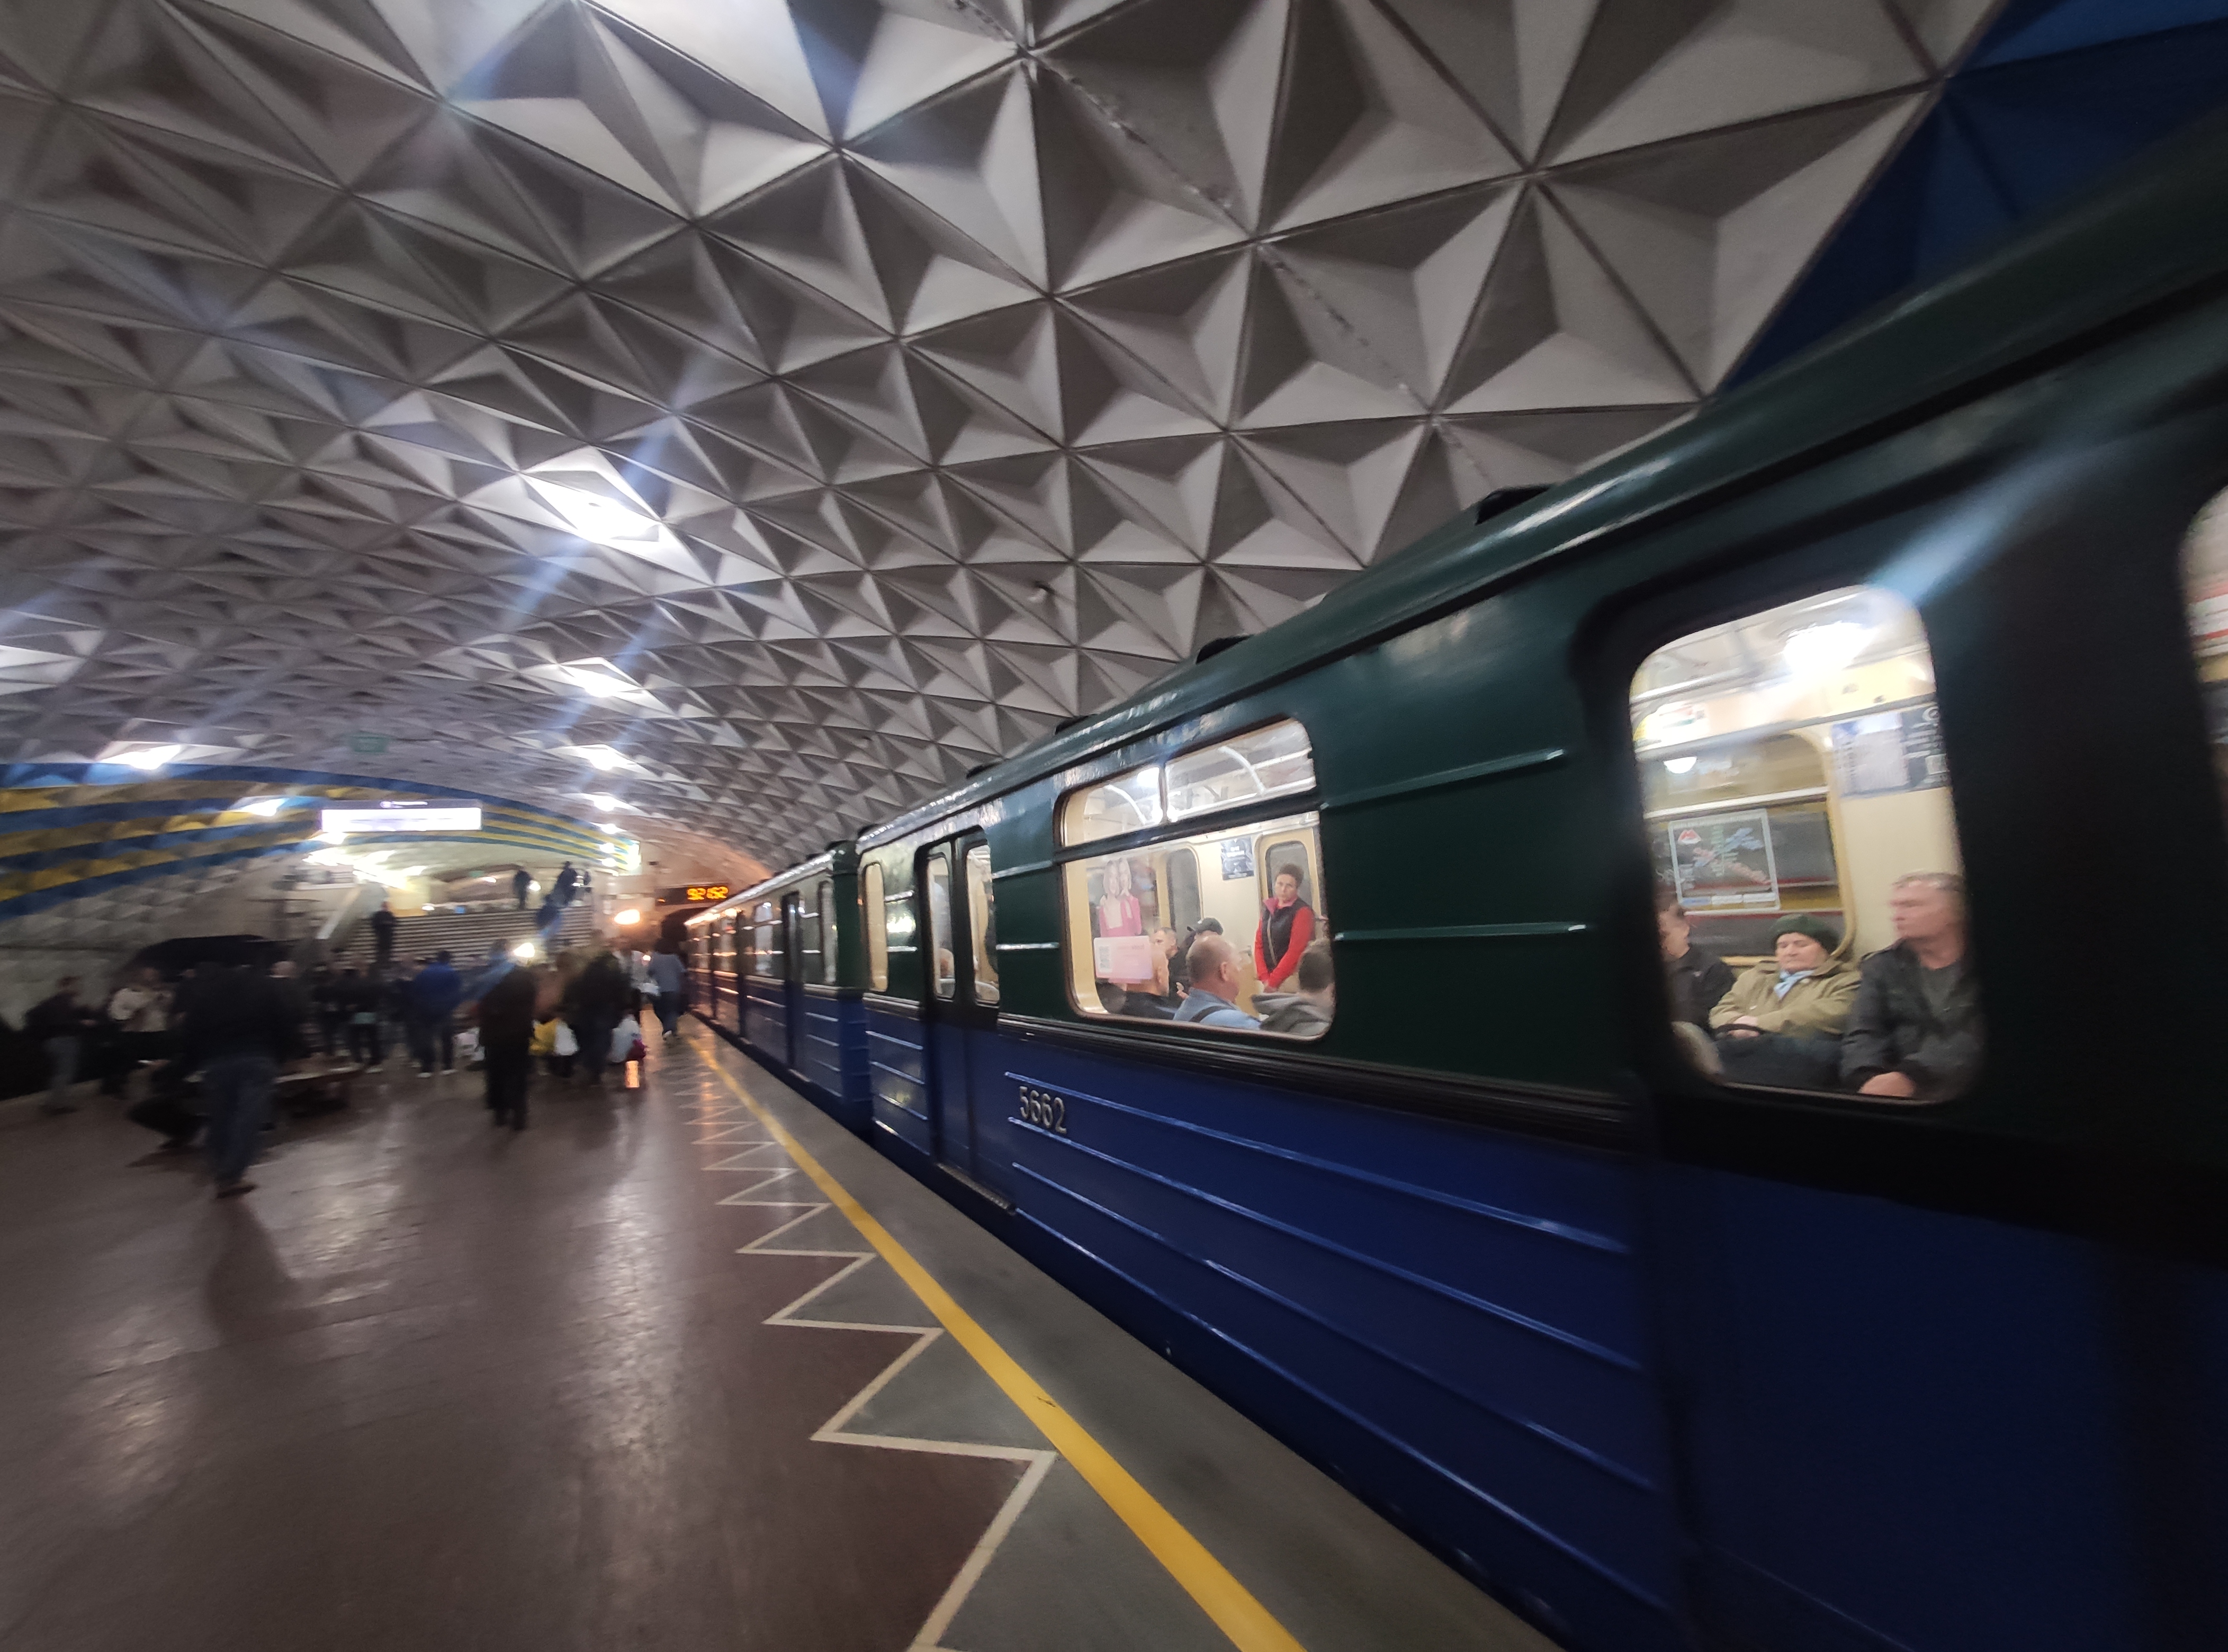 У Харкові запрацювало метро: що буде з тими, хто жили у підземці?